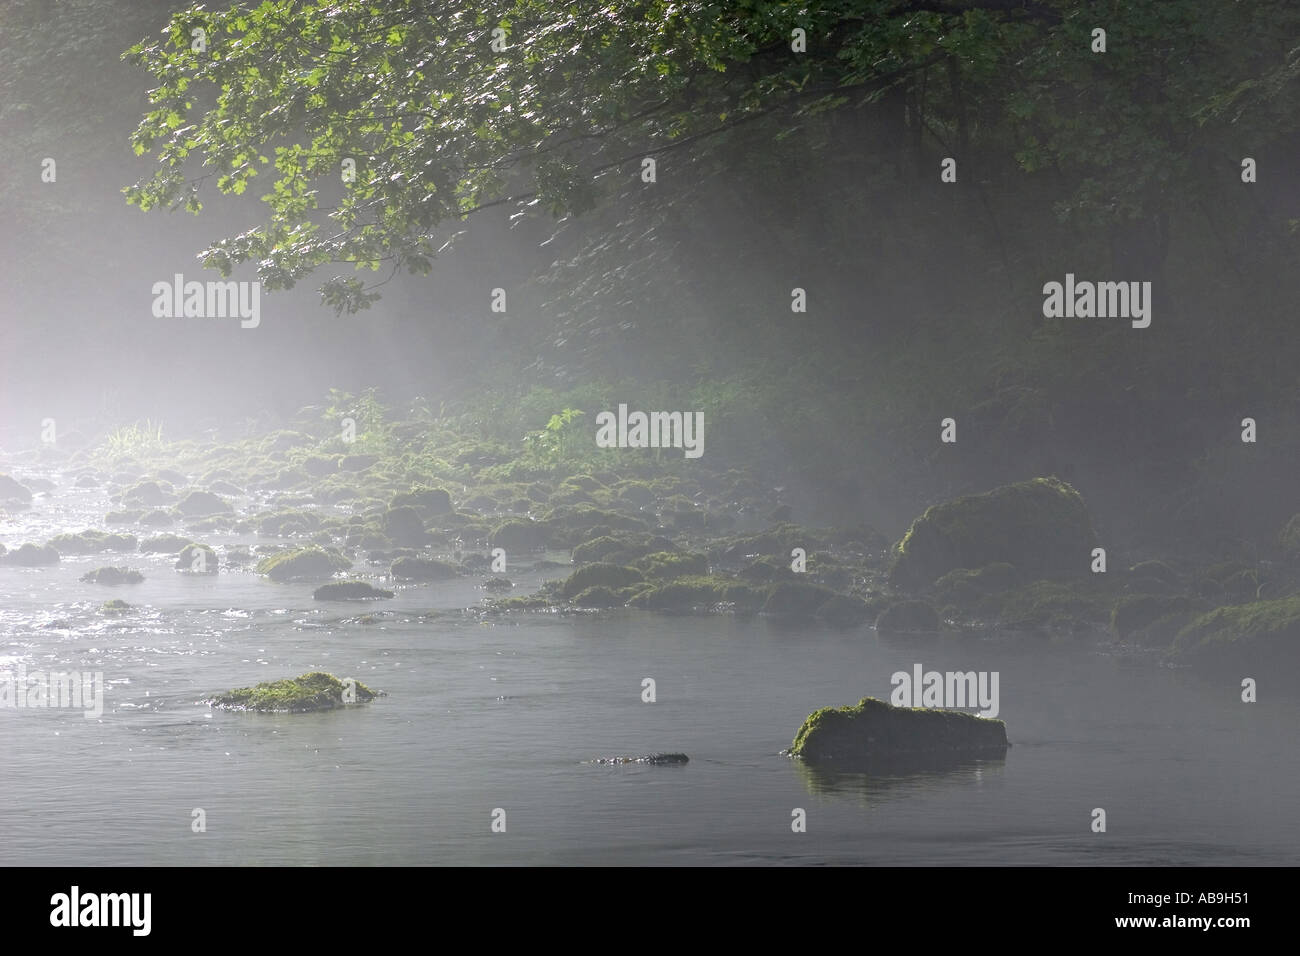 river in mist, Germany, Vogtland, Jocketa, Jun 04. Stock Photo